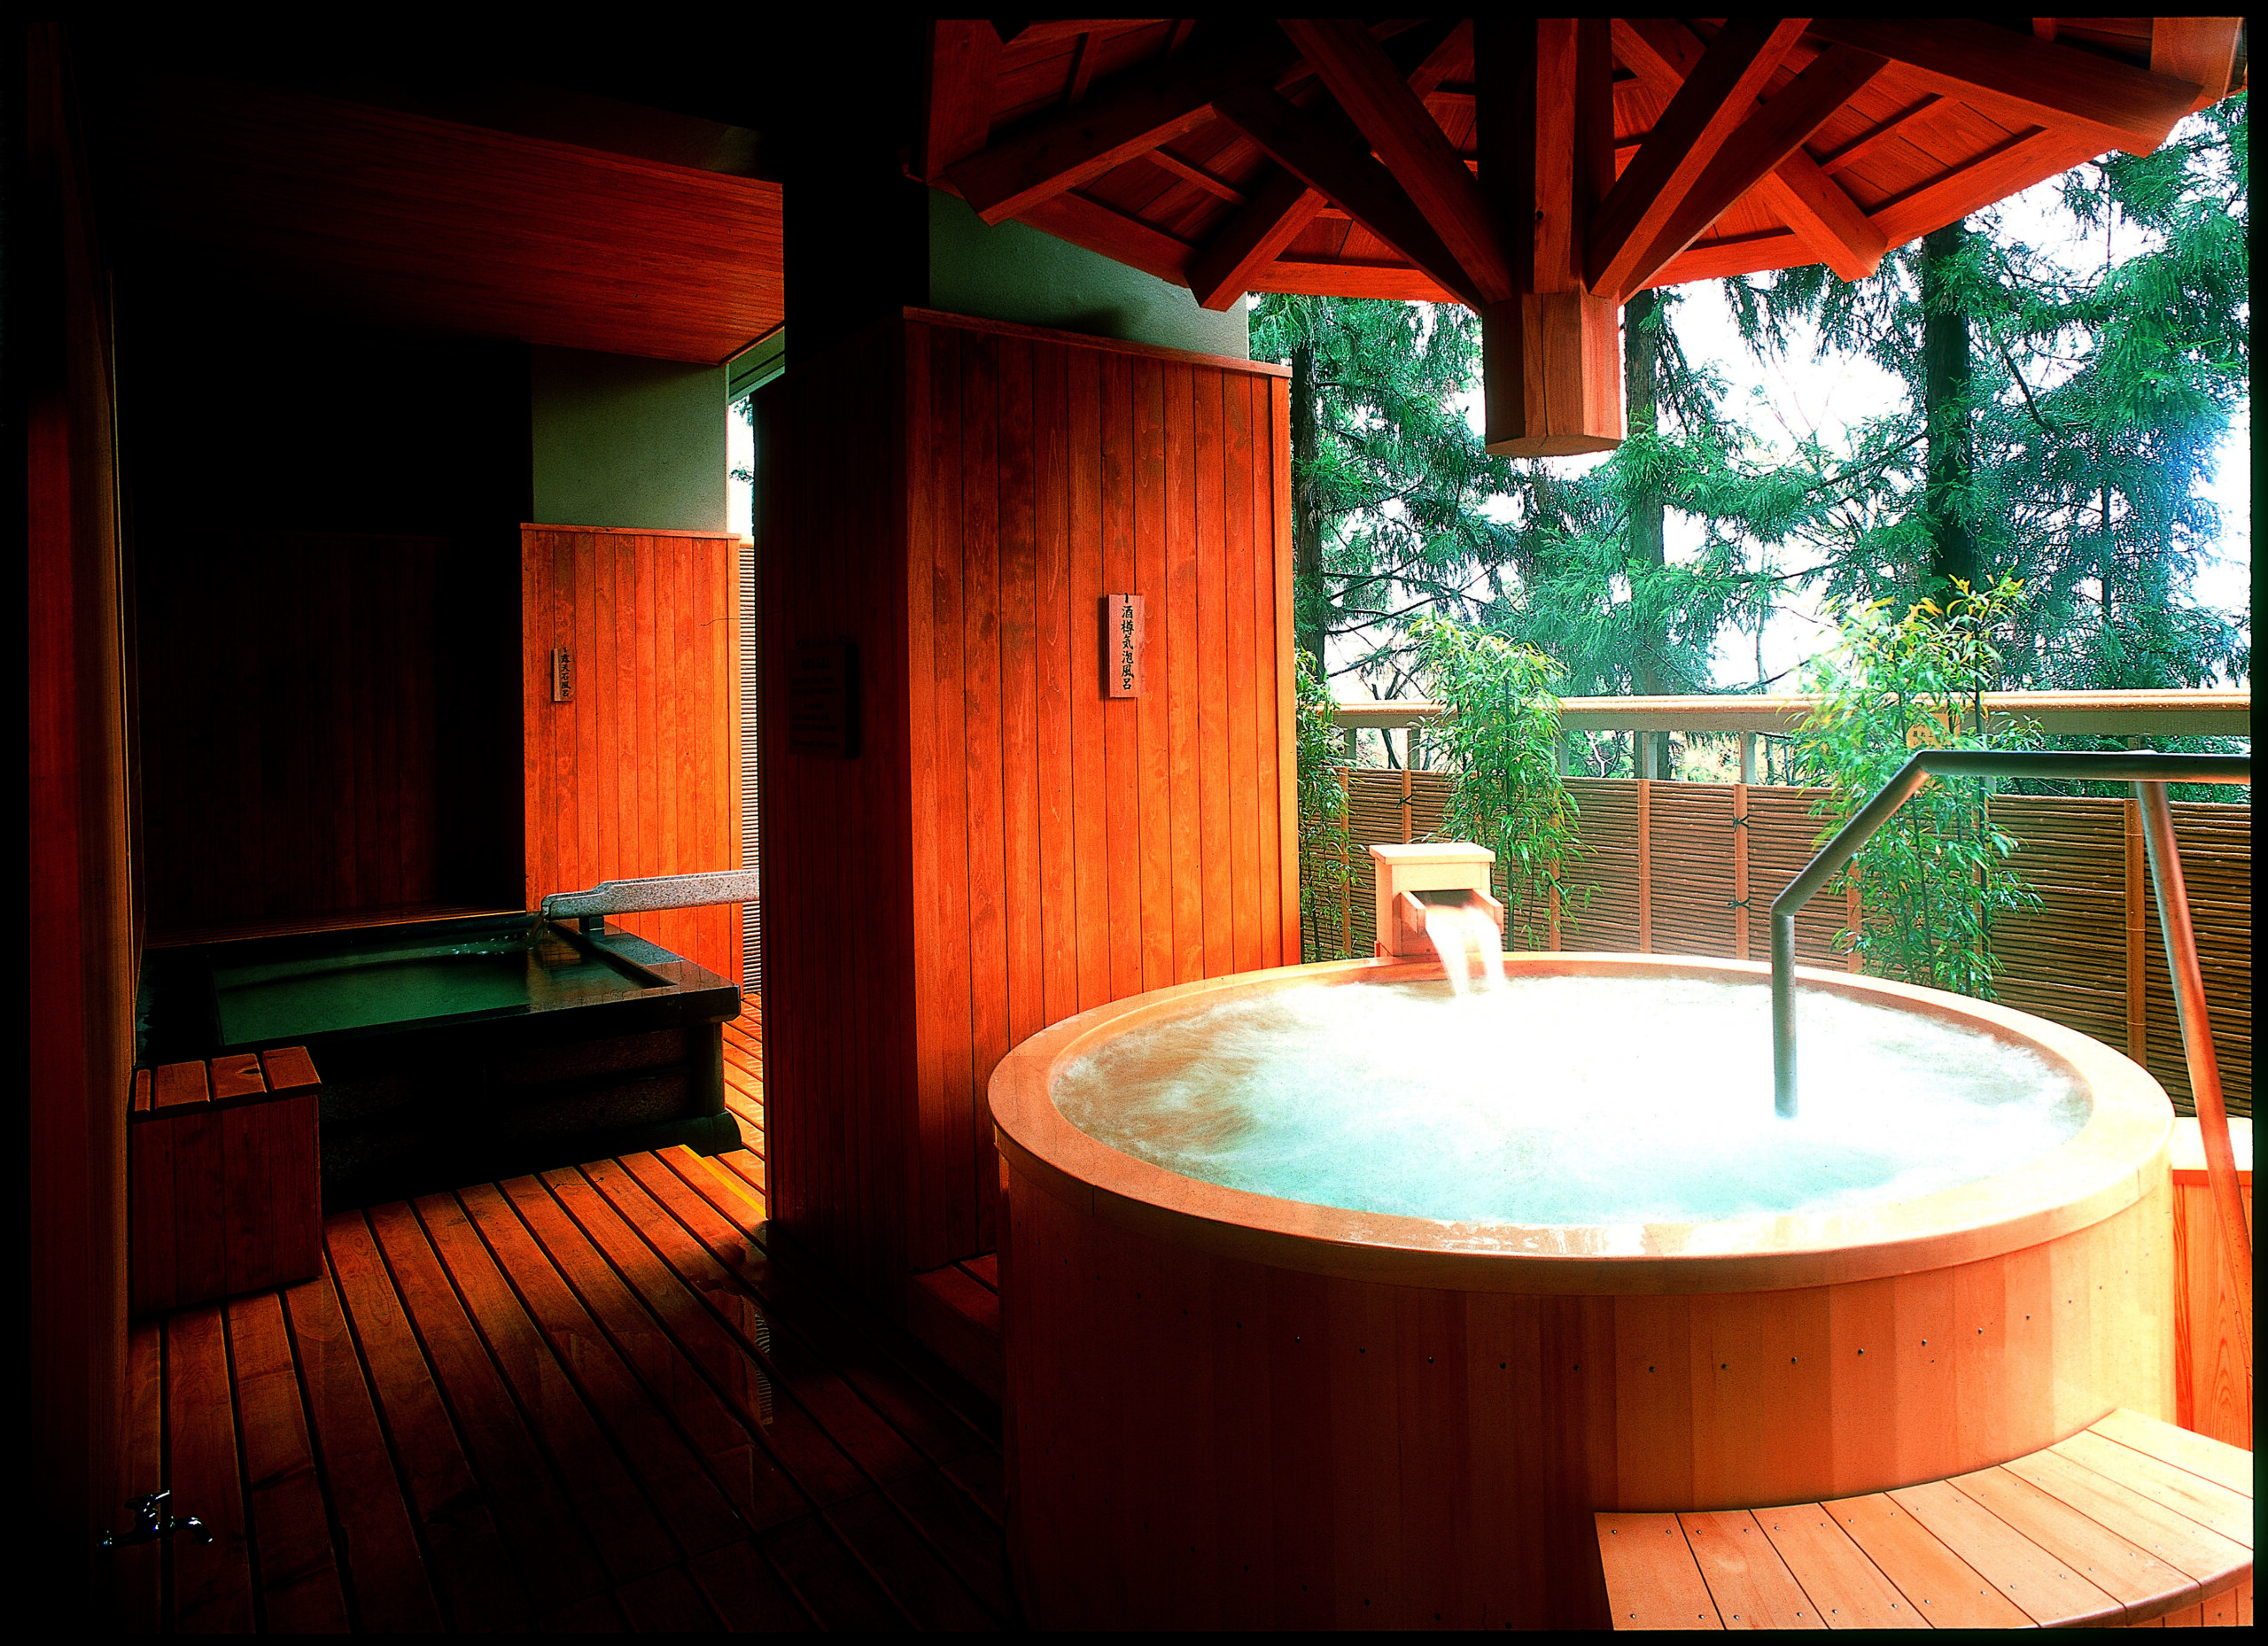 『飛騨・高山温泉 宝生閣』女性用大浴場にも2つの露天風呂がある。